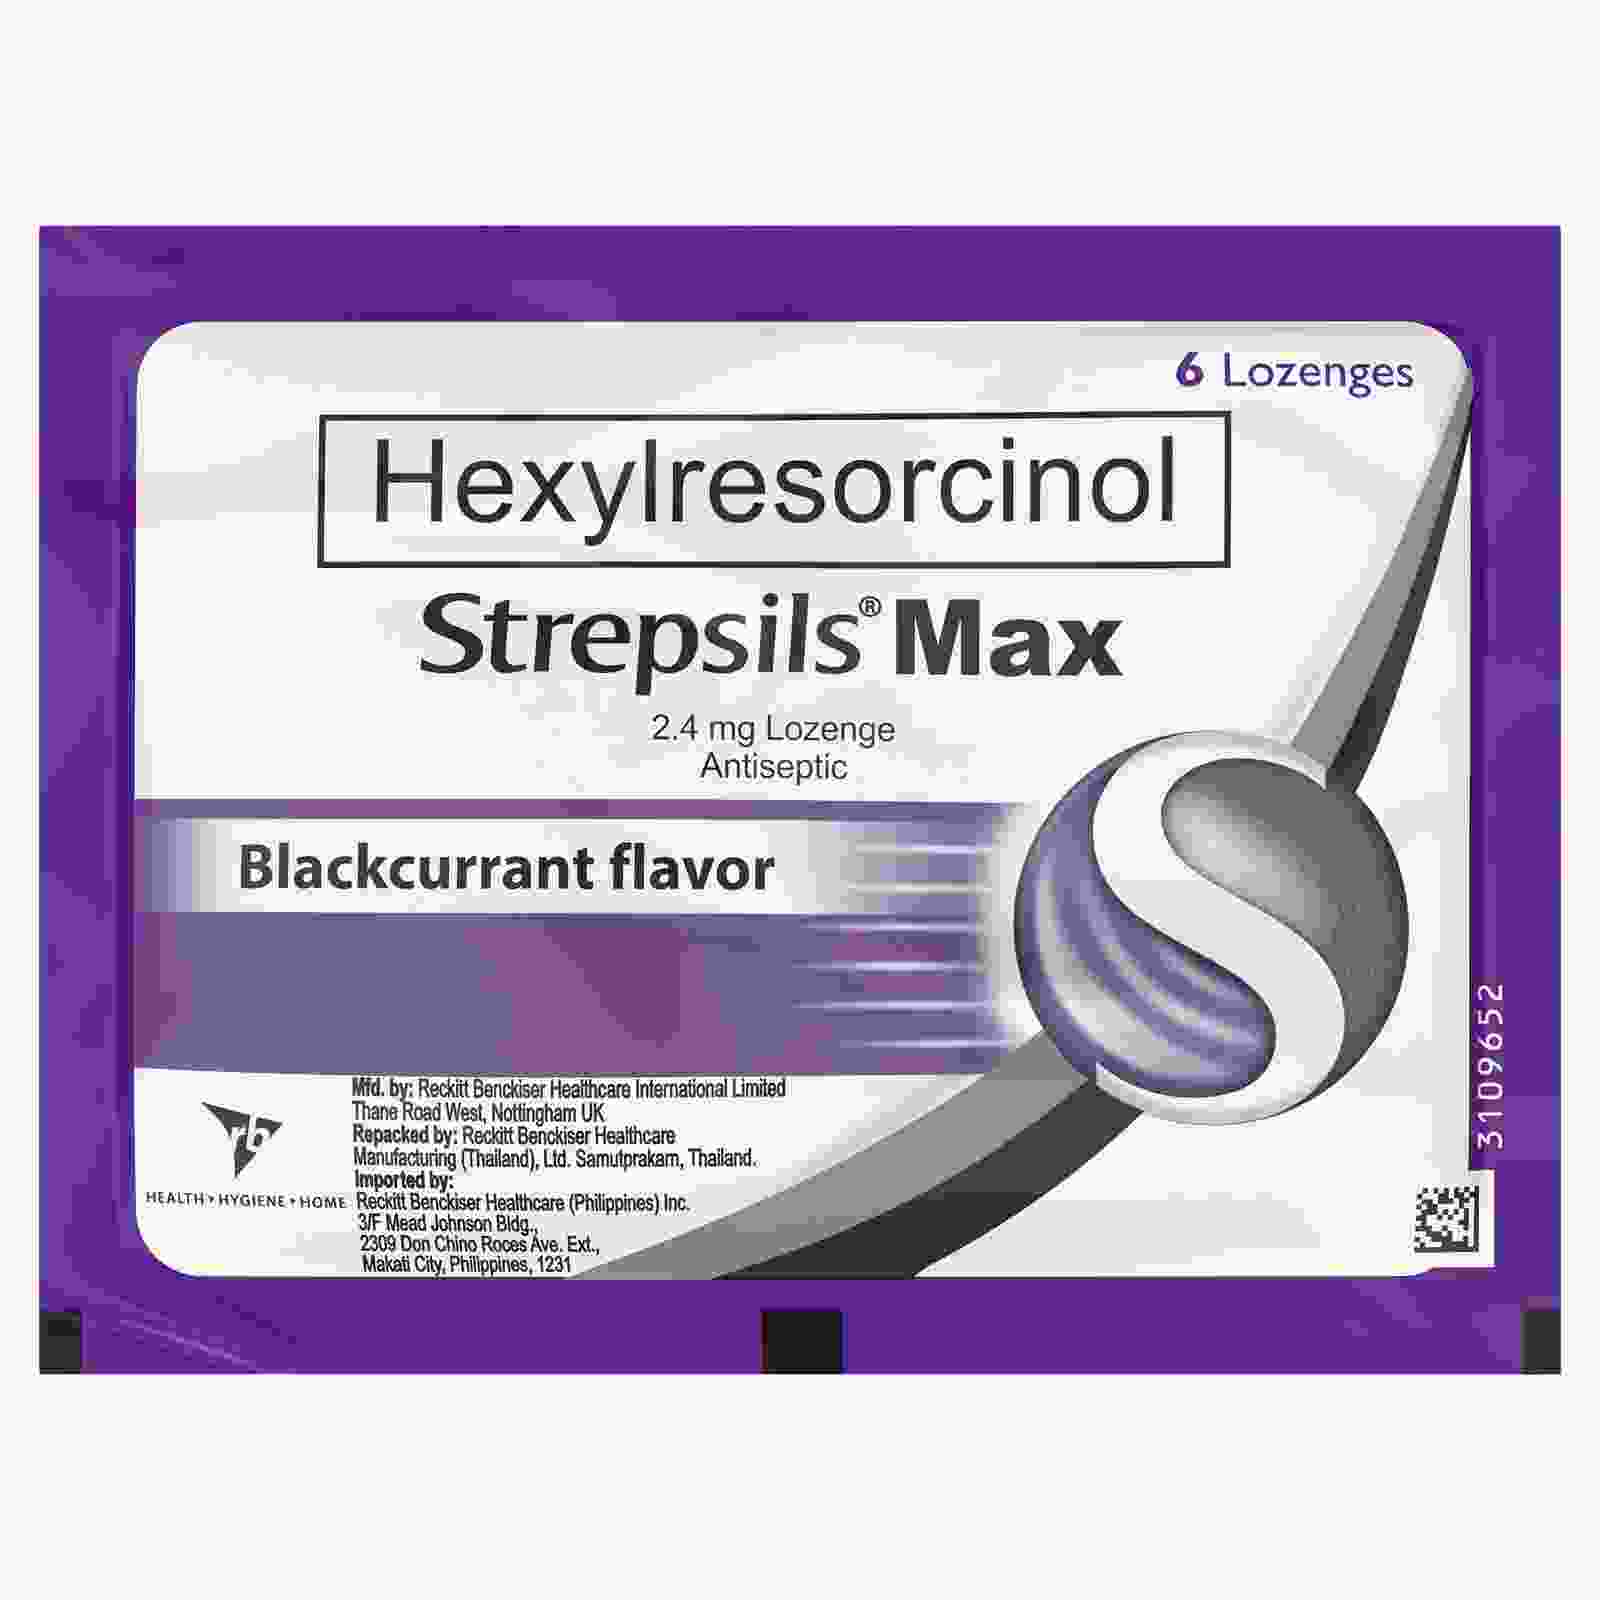 Hexylresorcinol Strepsils Max 6's Online at Best Price in philippines